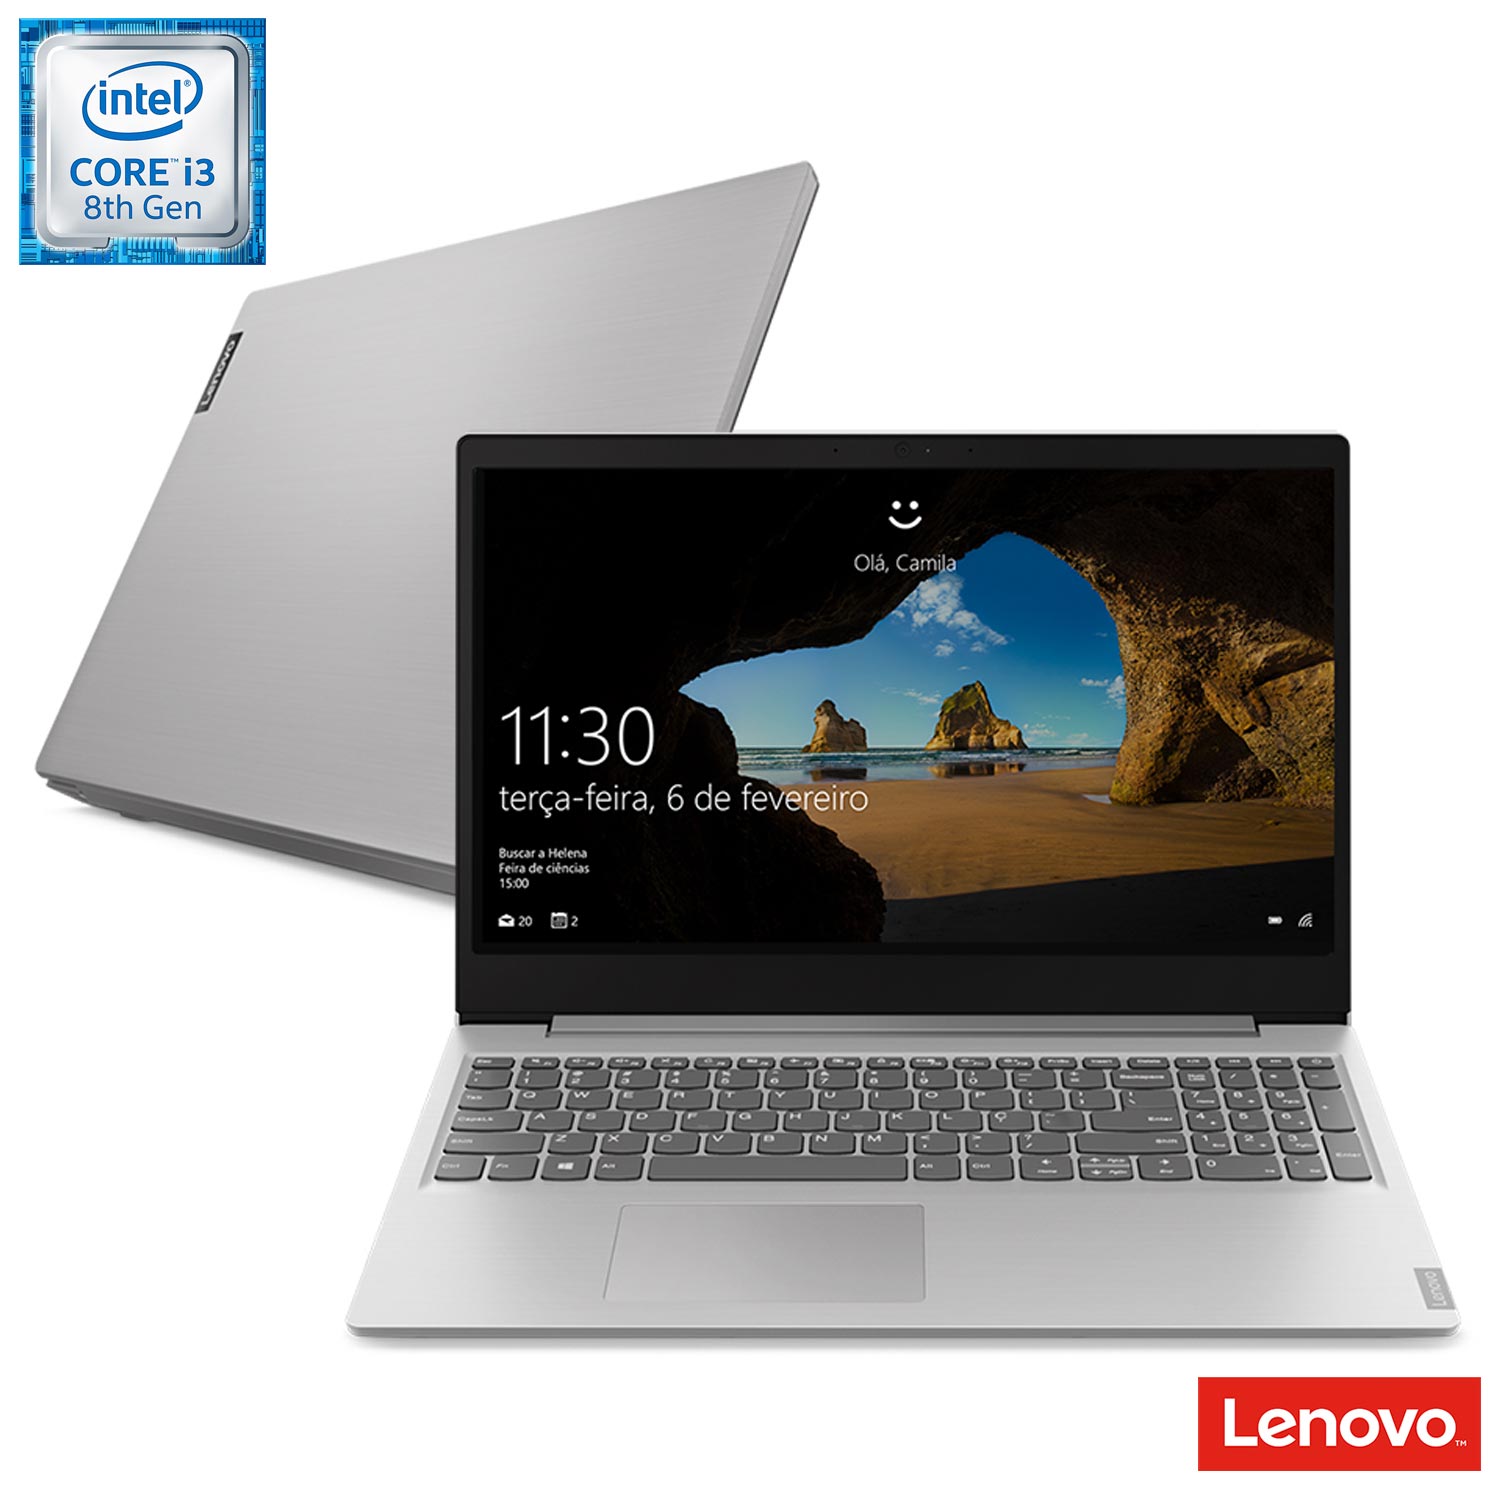 Notebook Ultrafino Lenovo, Intel® Core™ i3-8130U, 4GB, 1TB, Tela de 15,6″, Ideapad S145 – 81XM0002BR